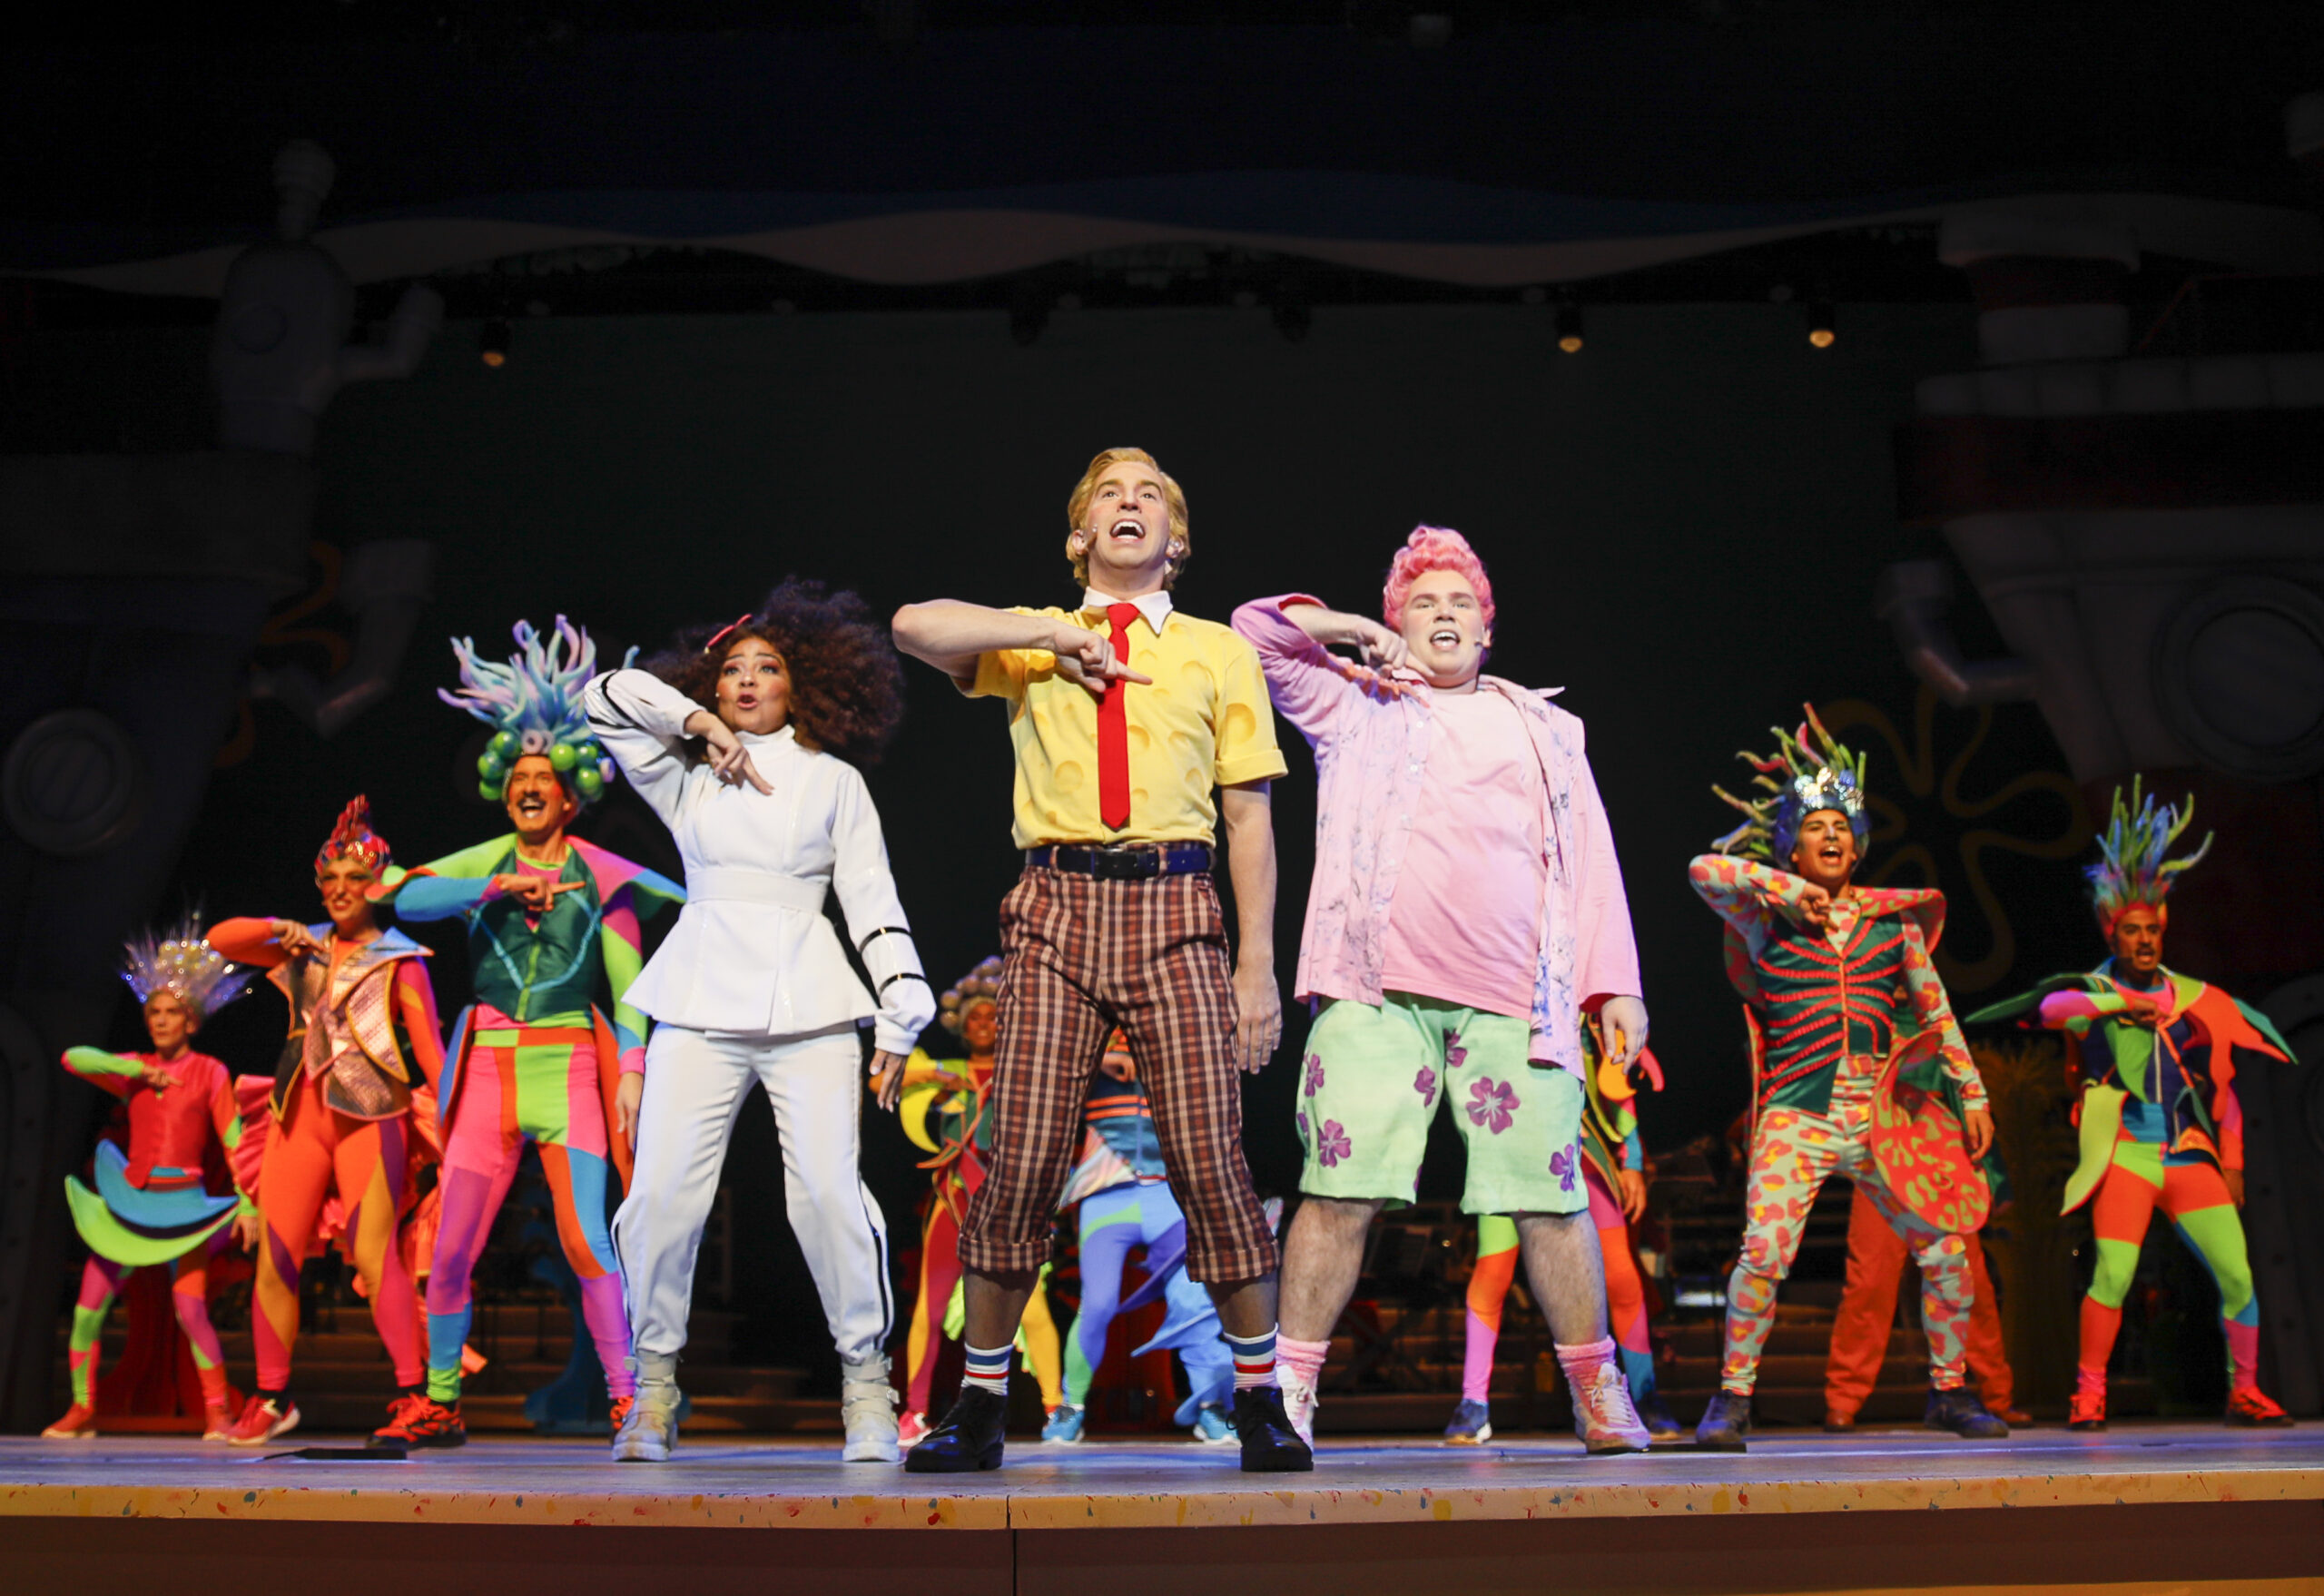 Bob Esponja, O Musical!, sucesso da Broadway, ganha montagem brasileira e estreia no Teatro Sérgio Cardoso